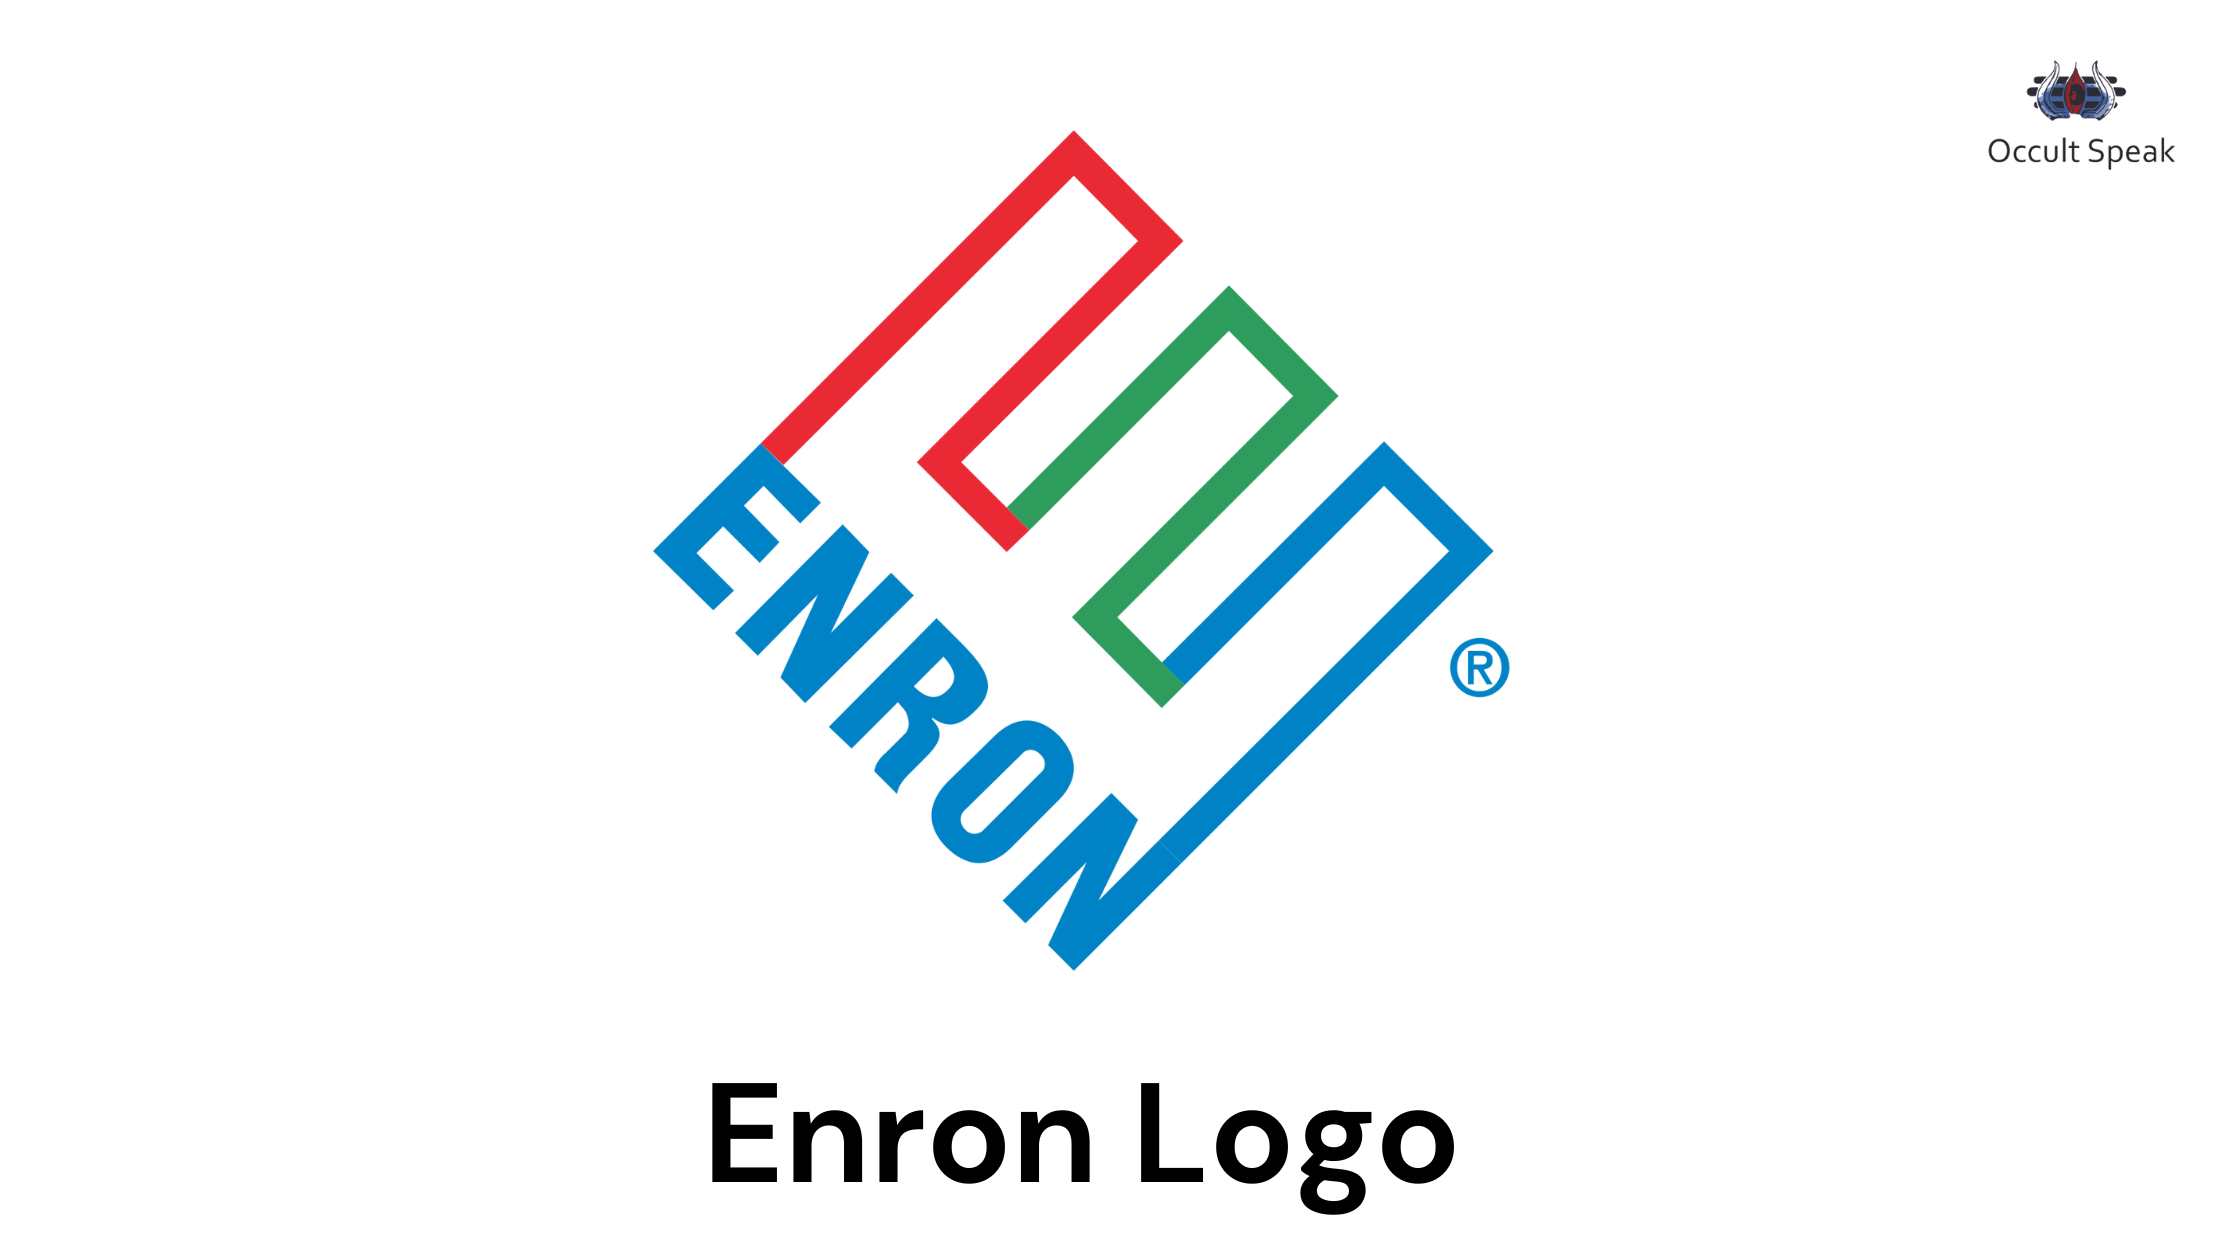 Enron Logo Analysis